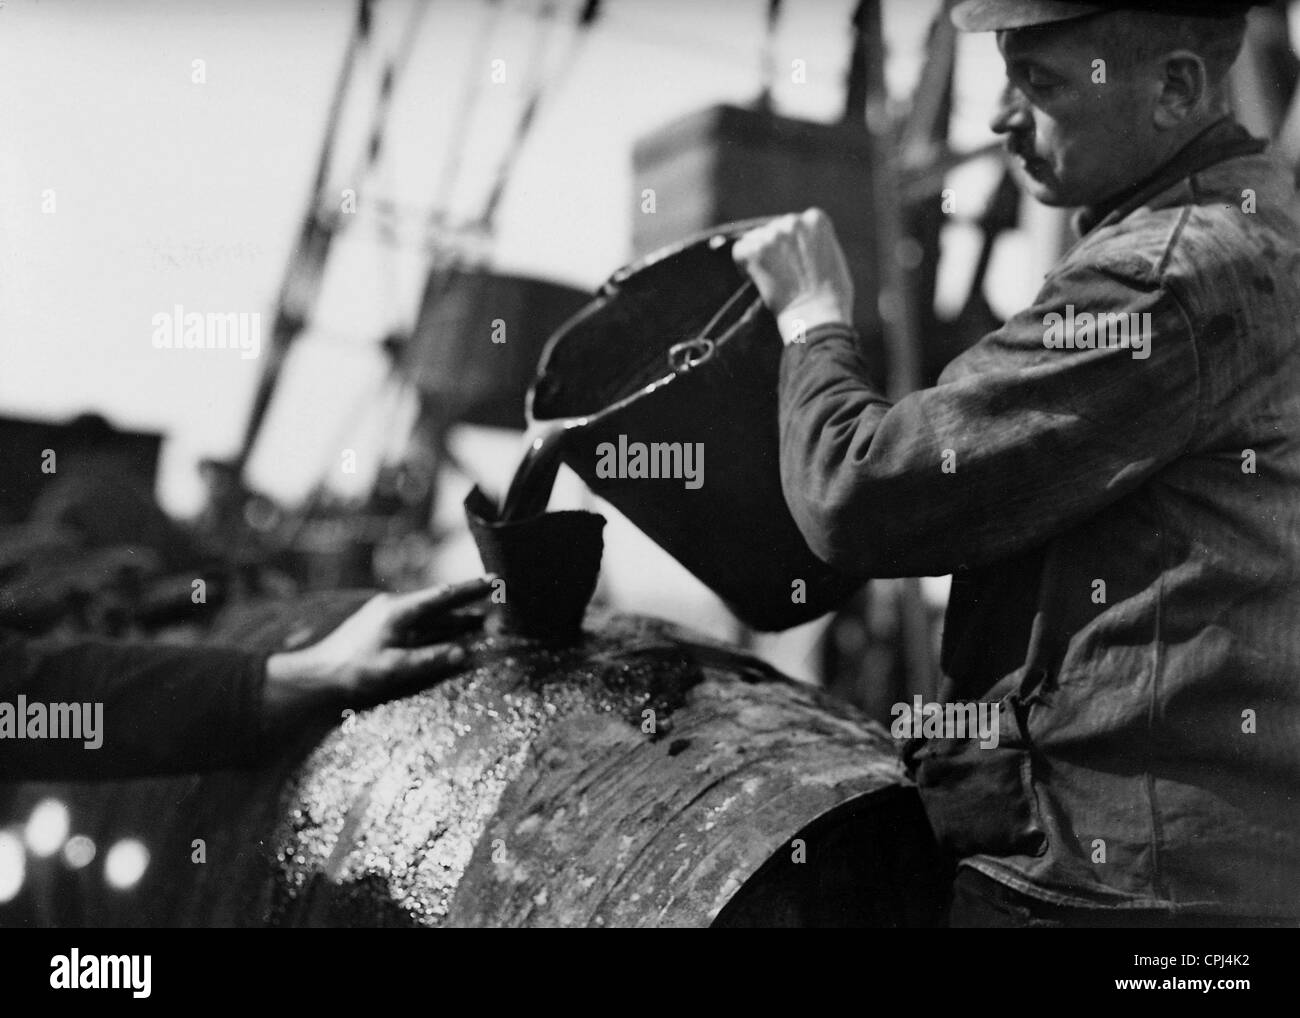 El embotellado de crudo en Alemania, 1904 Foto de stock